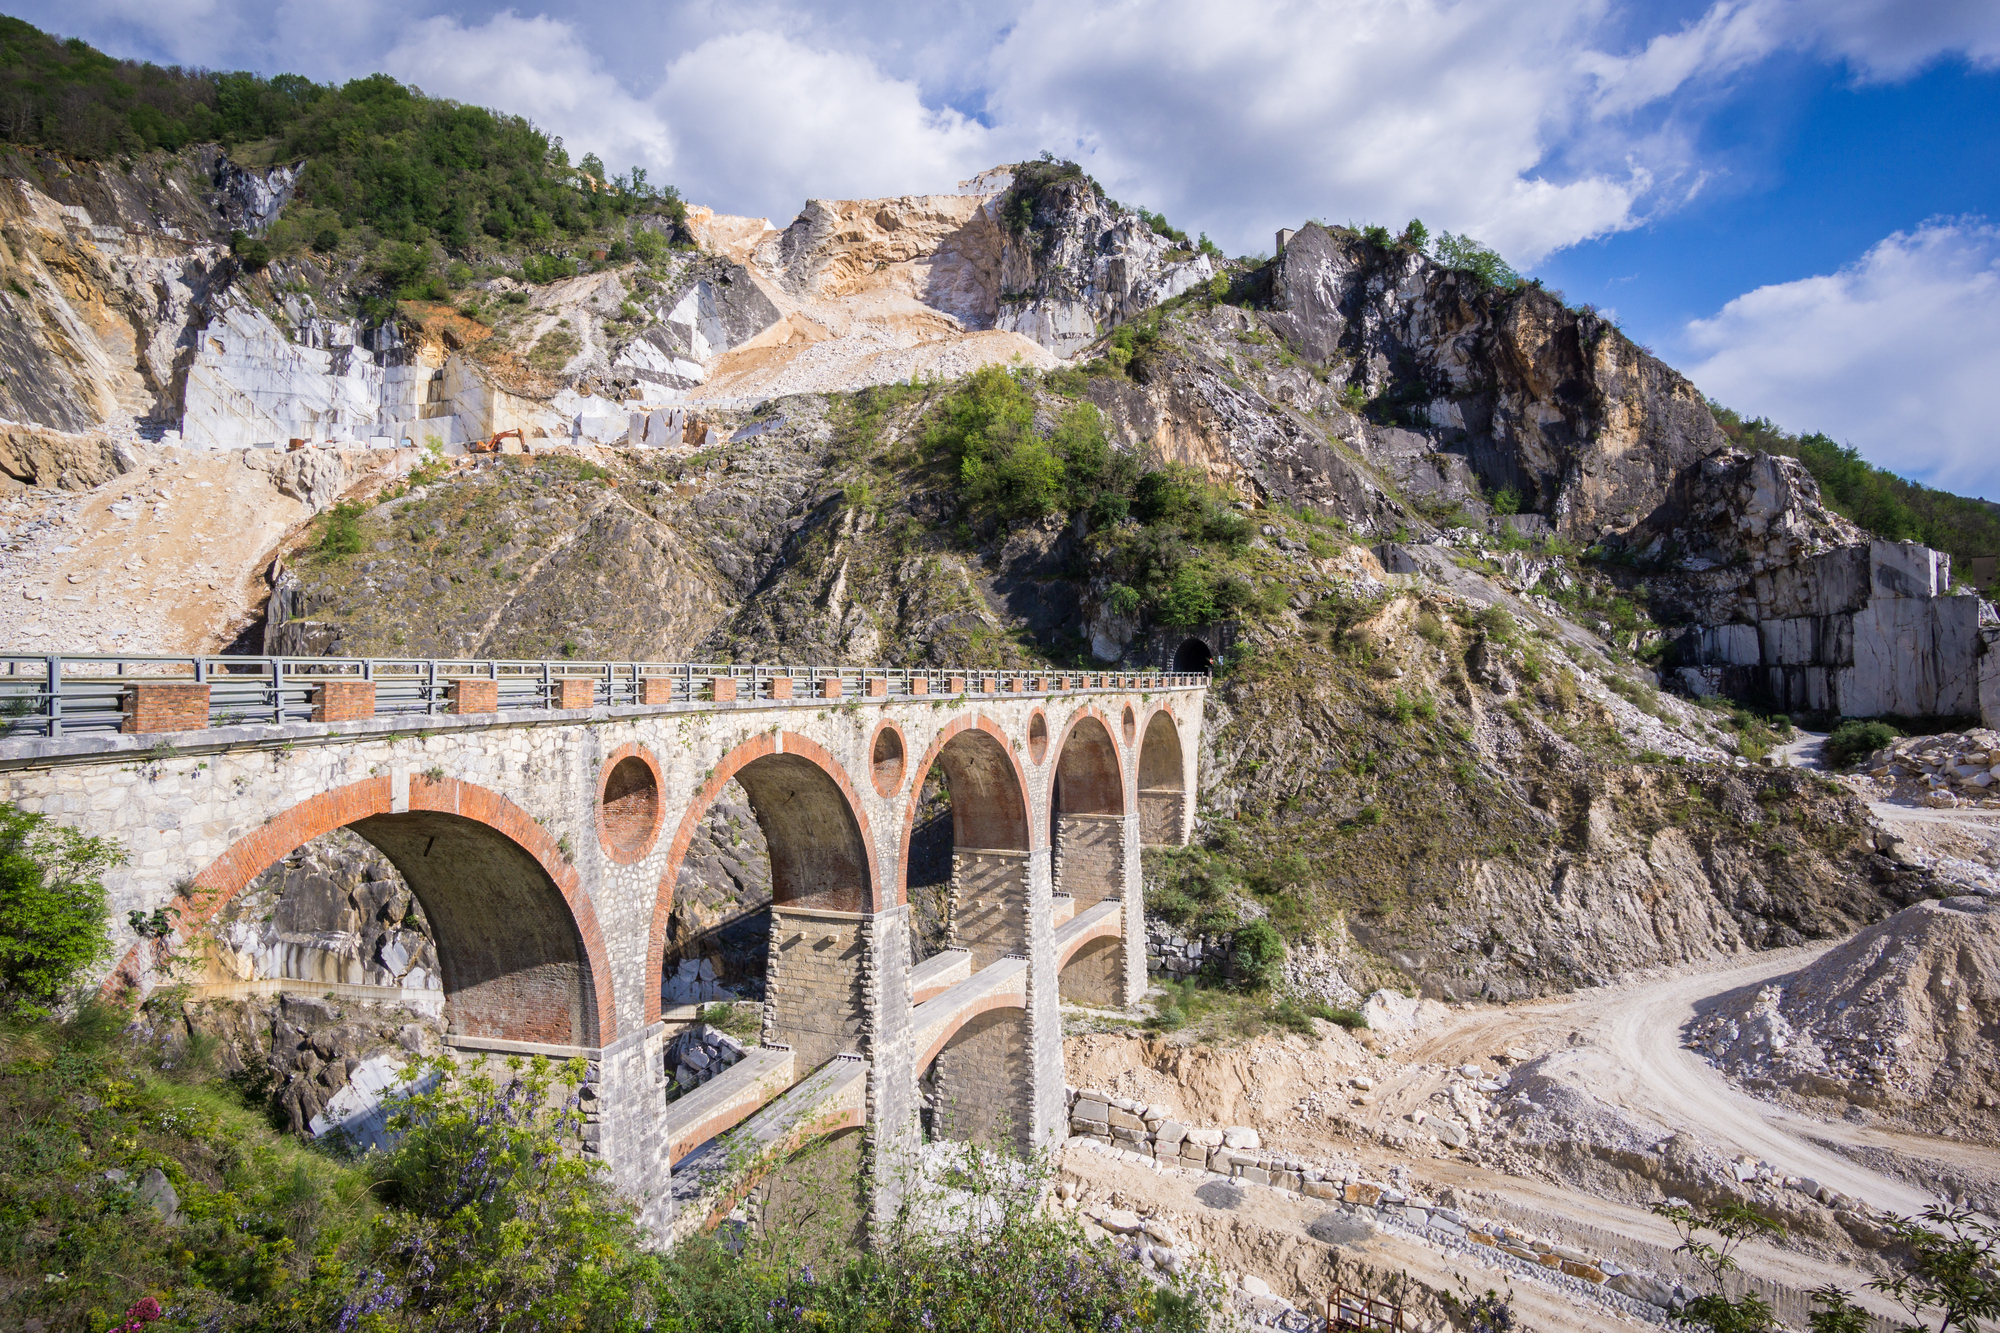 Ponti di Vara - Carrara